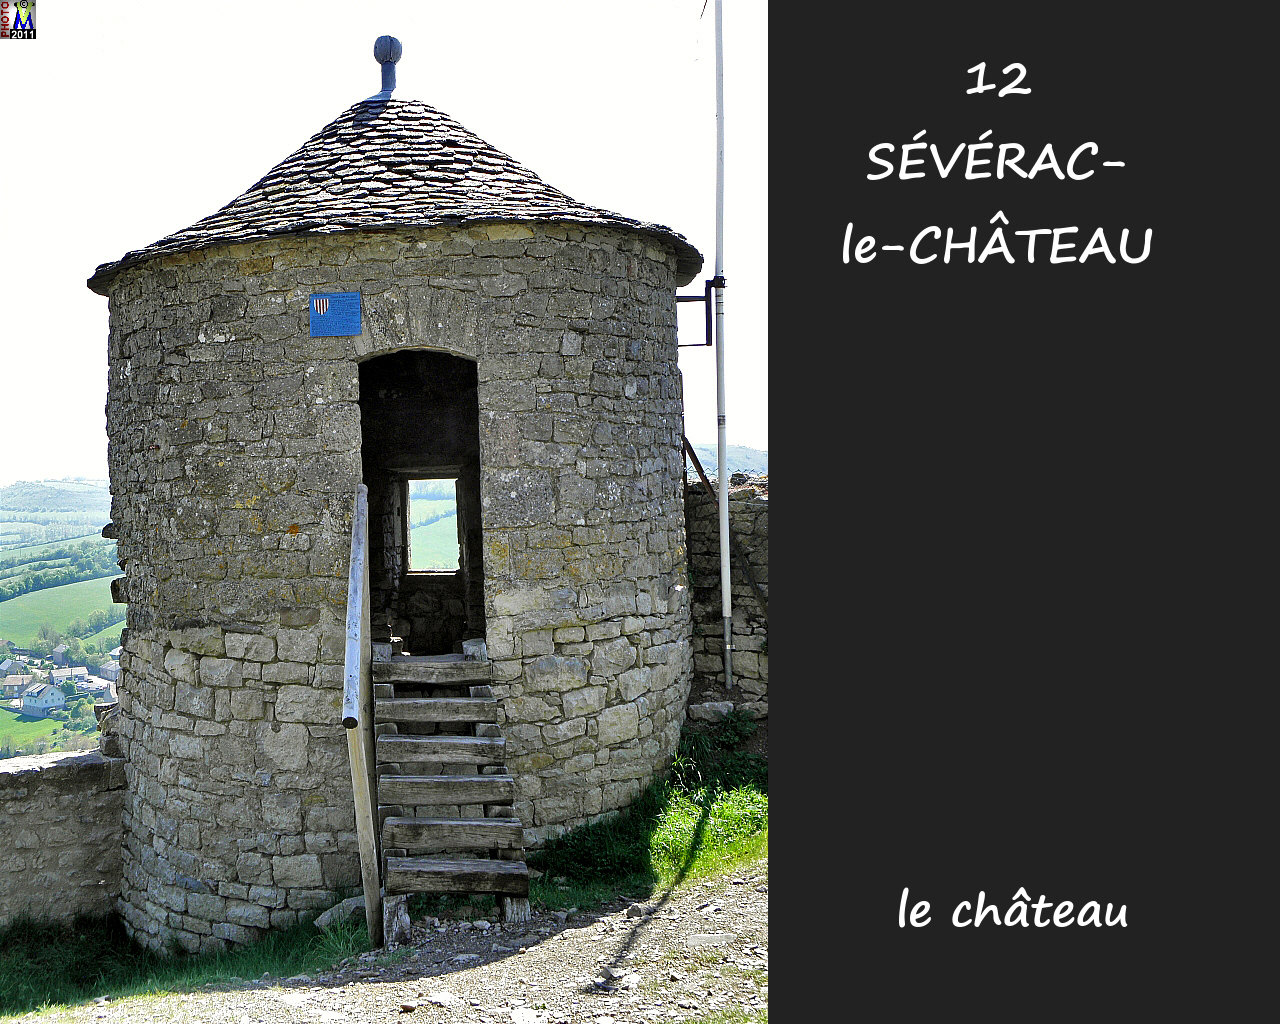 12SEVERAC-CHATEAU_chateau_134.jpg